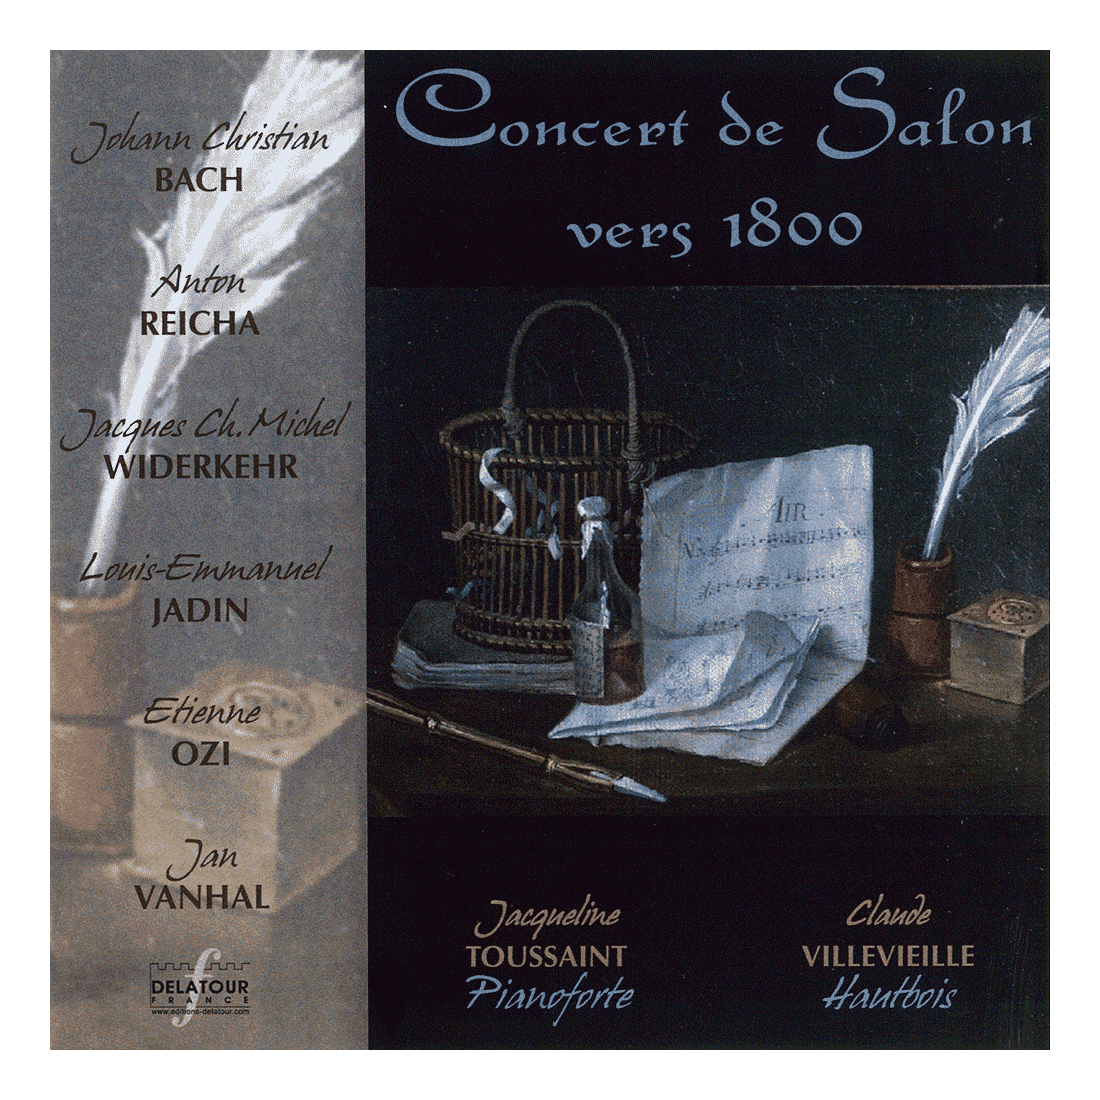 Concert de Salon vers 1800